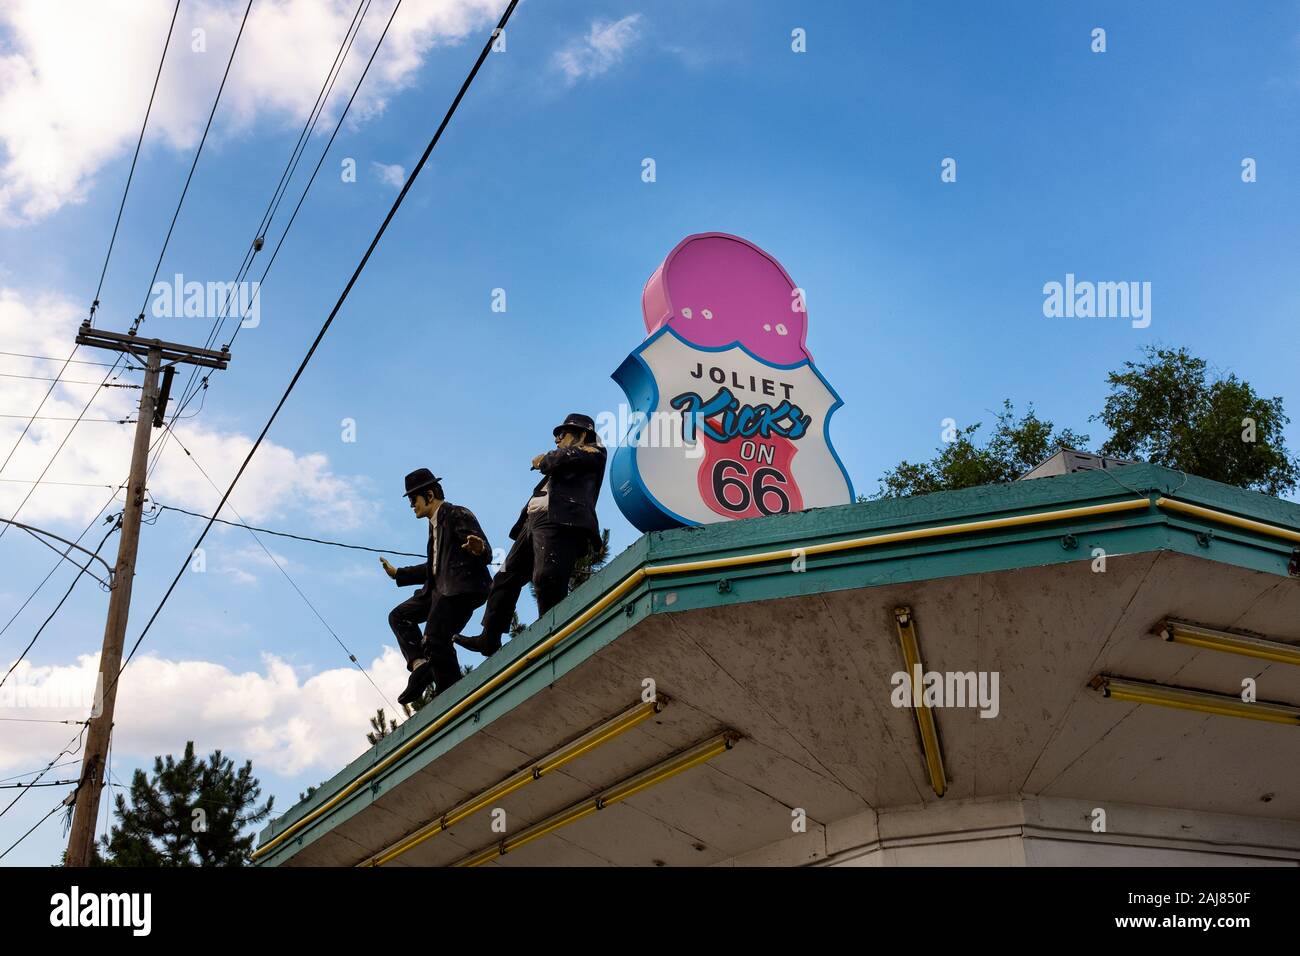 Joliet, Illinois, USA - 5 juillet 2014 : le toit du stand de crème glacée riche et crémeux avec les blues brothers, les chiffres de la ville de Joliet, l'aling Banque D'Images